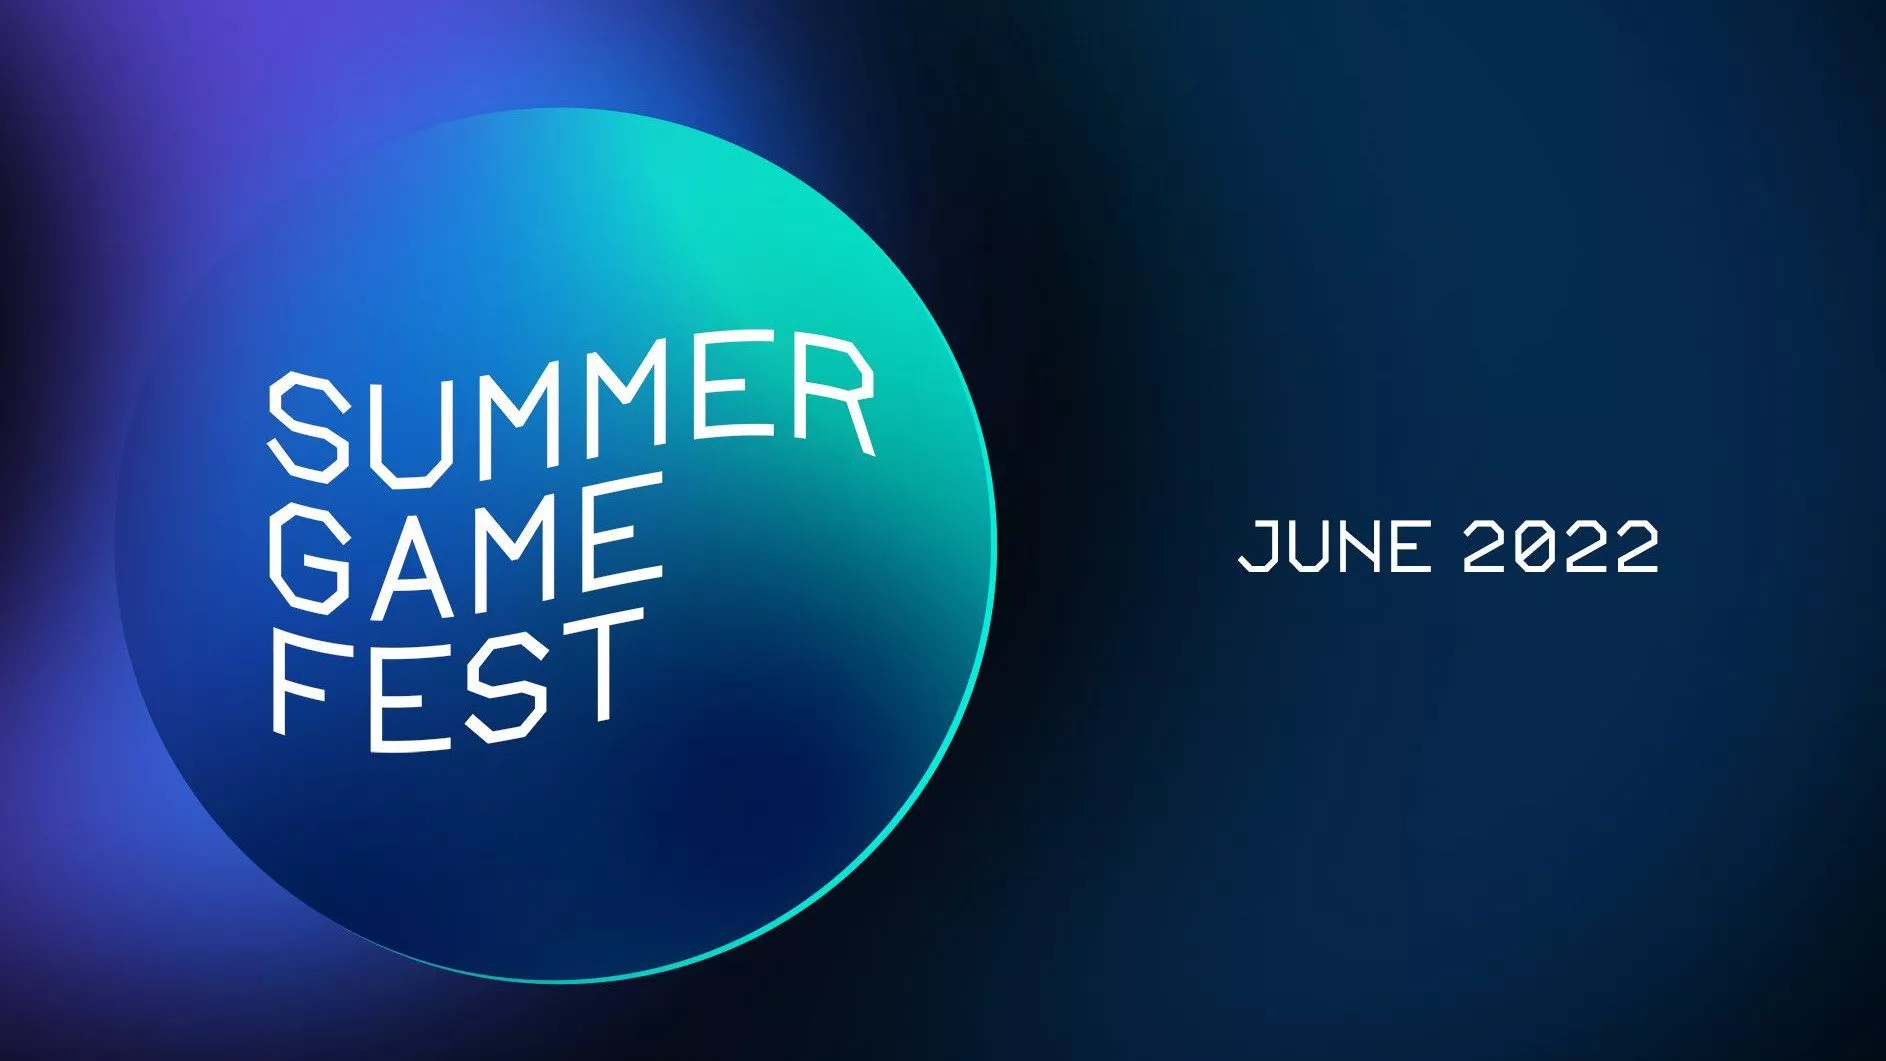 Die Teilnehmer am Summer Game Fest 2022 stehen fest Heropic